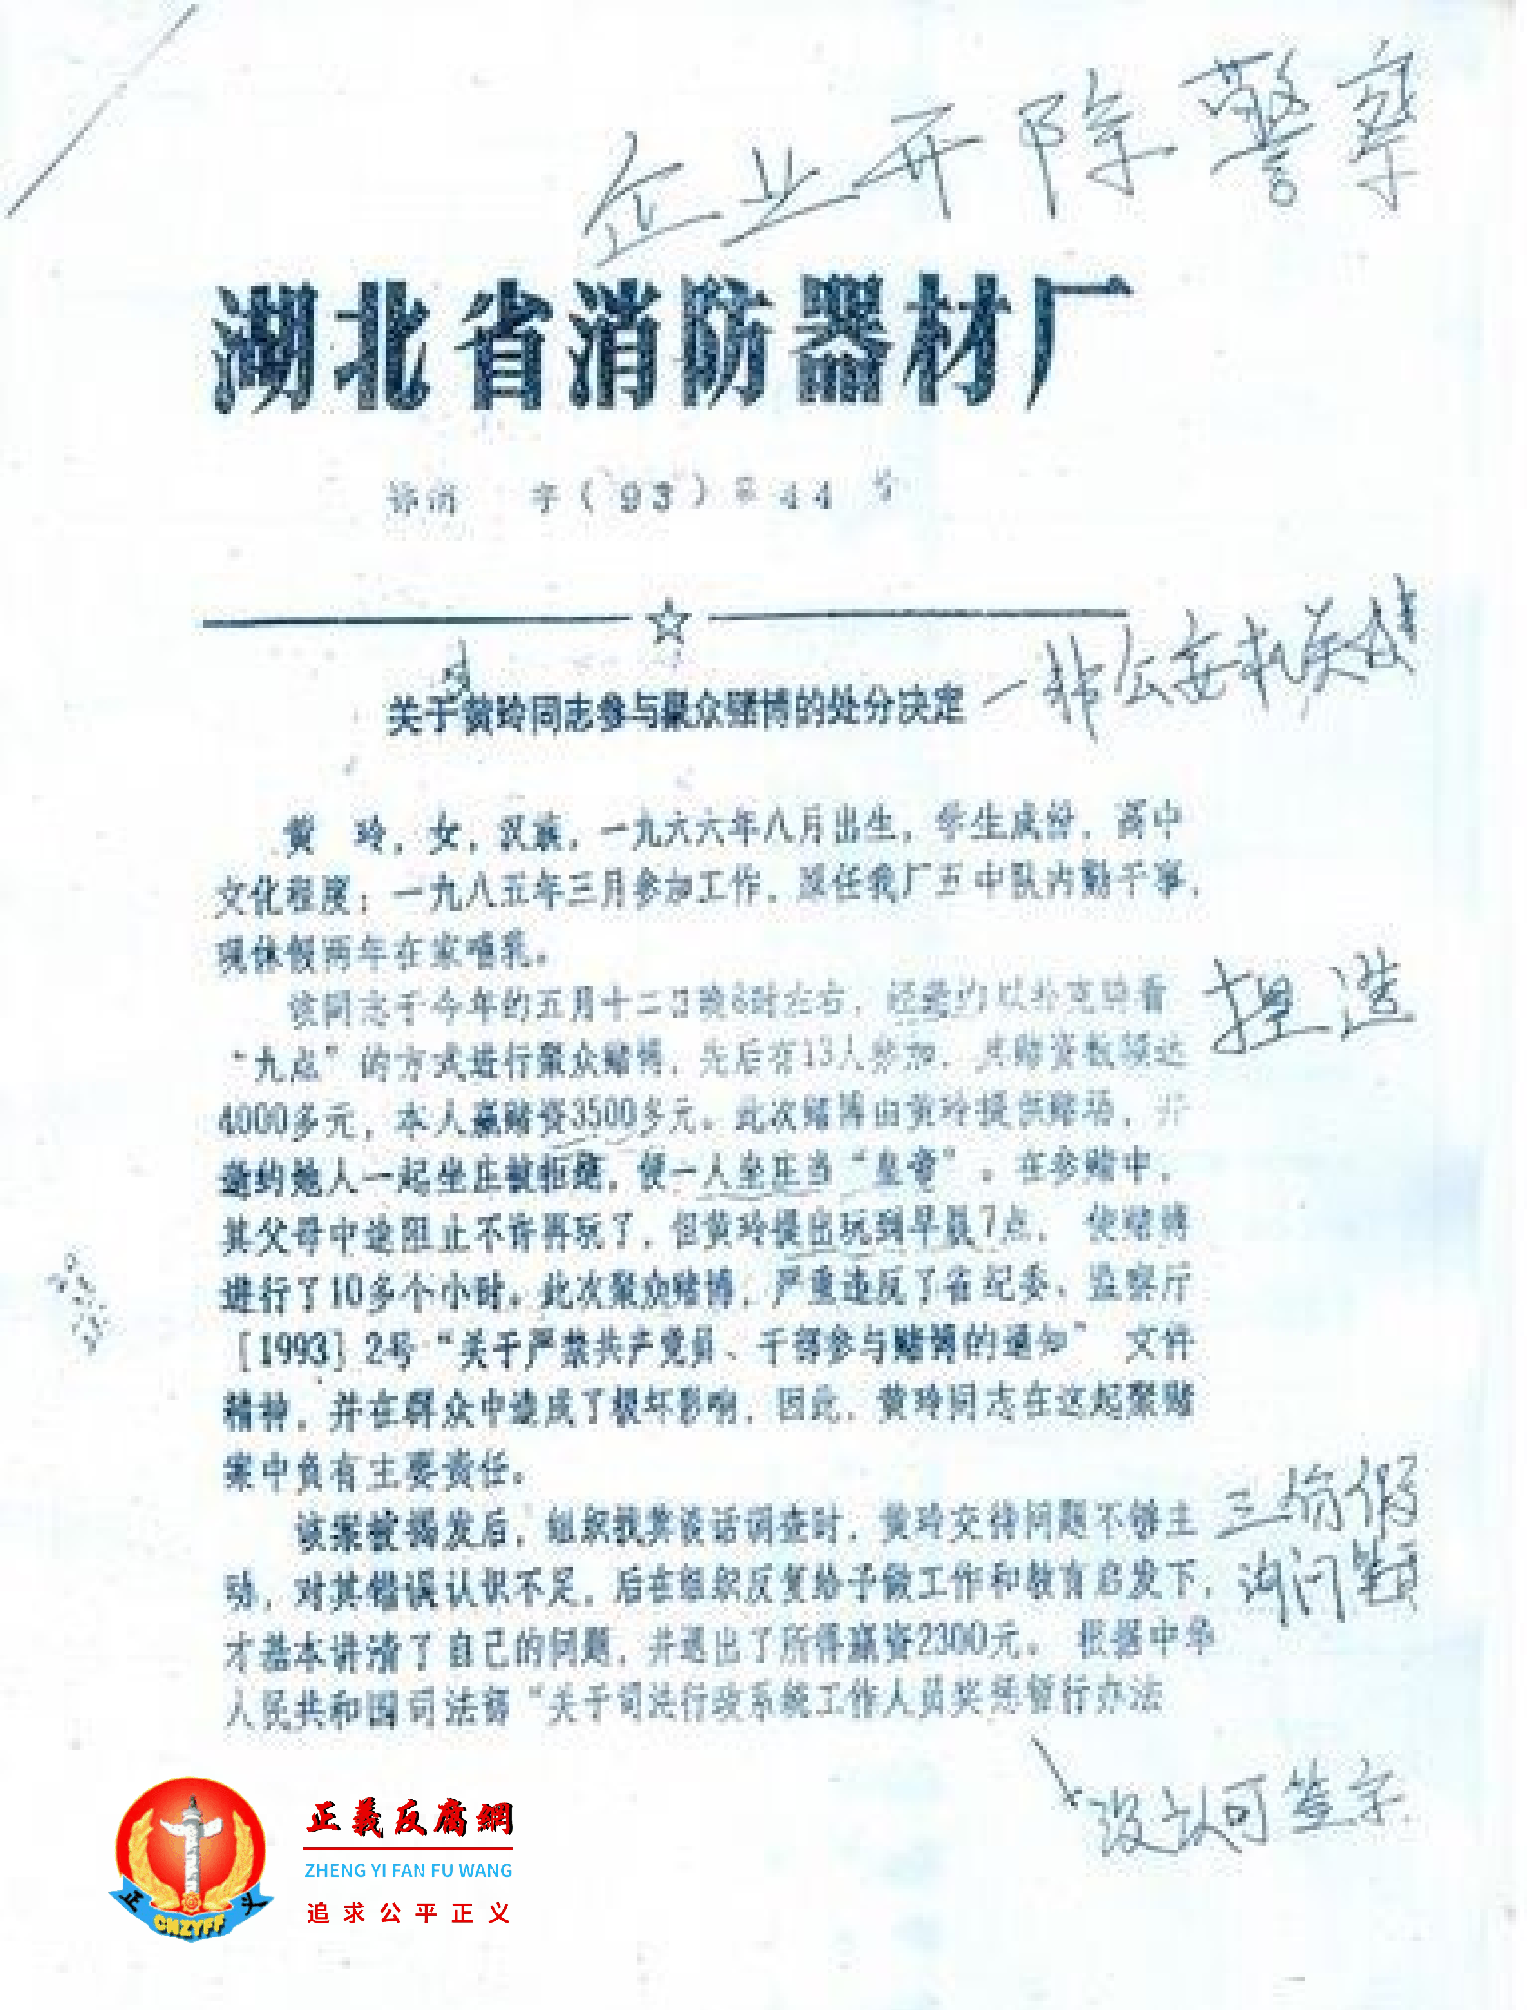 1993年黄玲因休产假，被单位纪委构陷“聚众赌博”罪名以用企业“湖北省消防器材厂”开除警察公职文件。.png